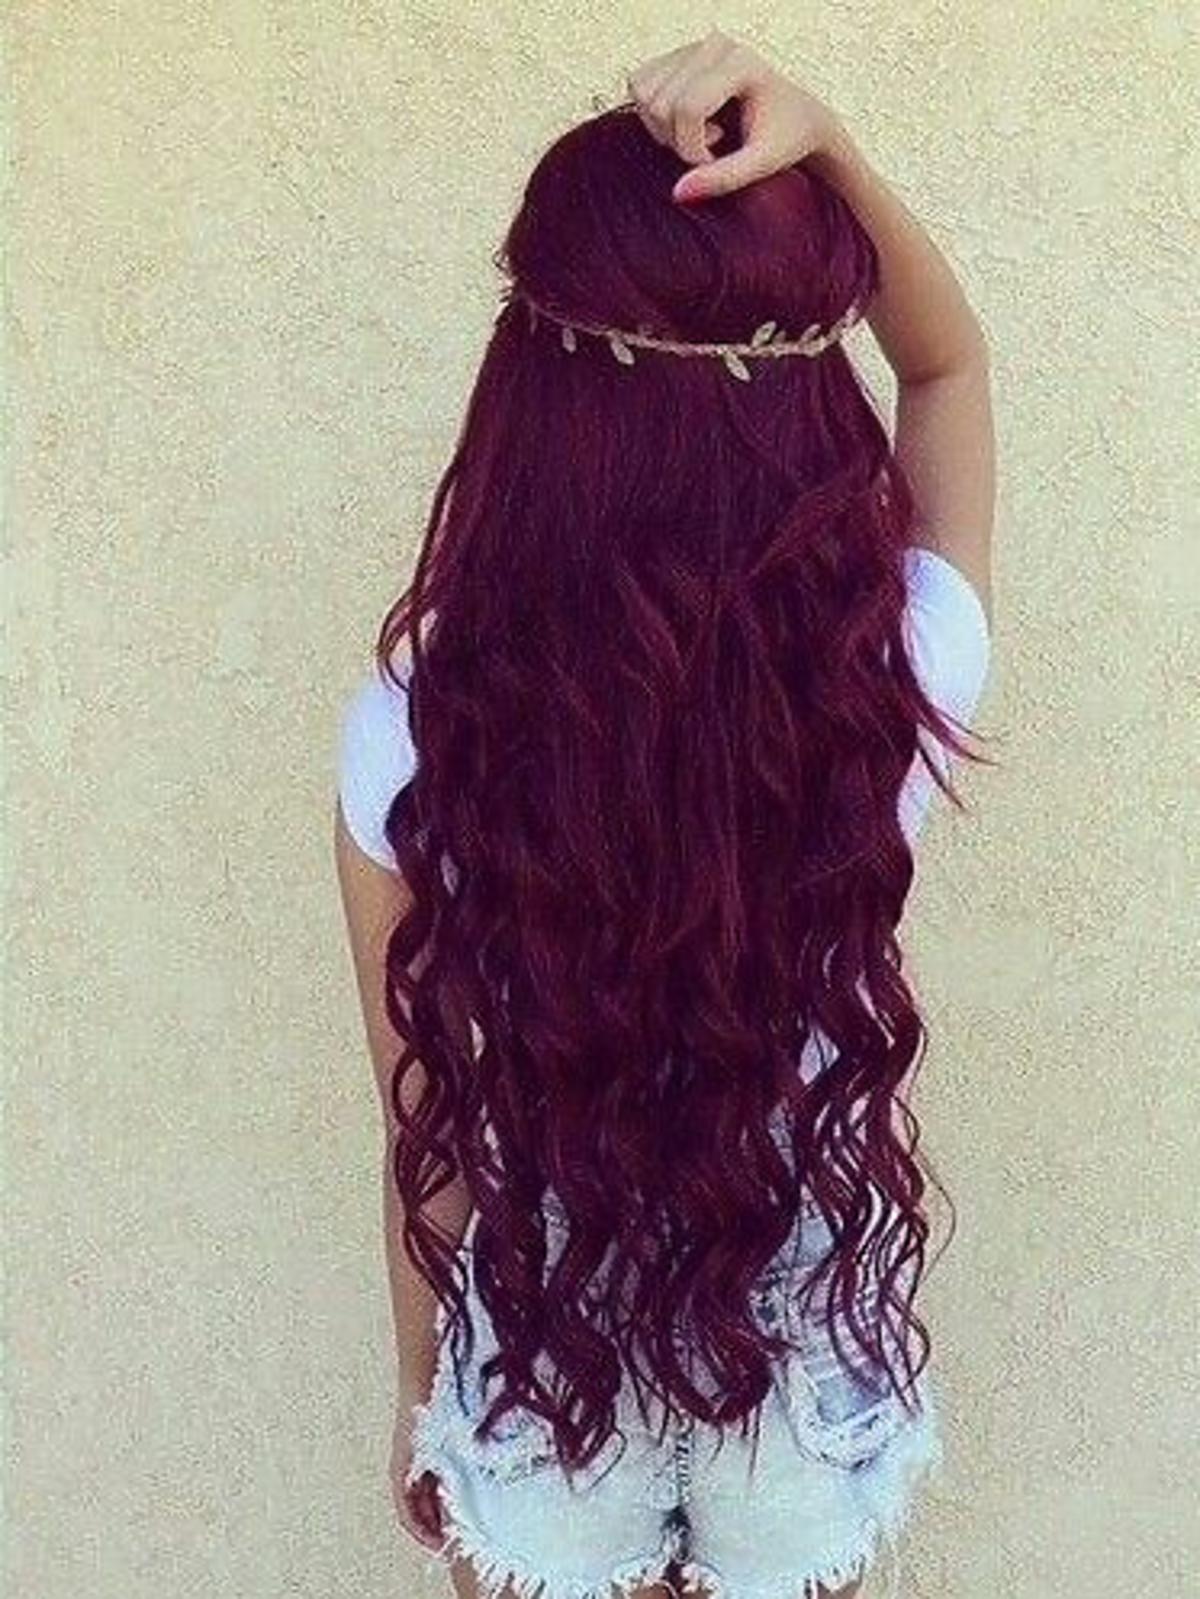 Burgundy hair